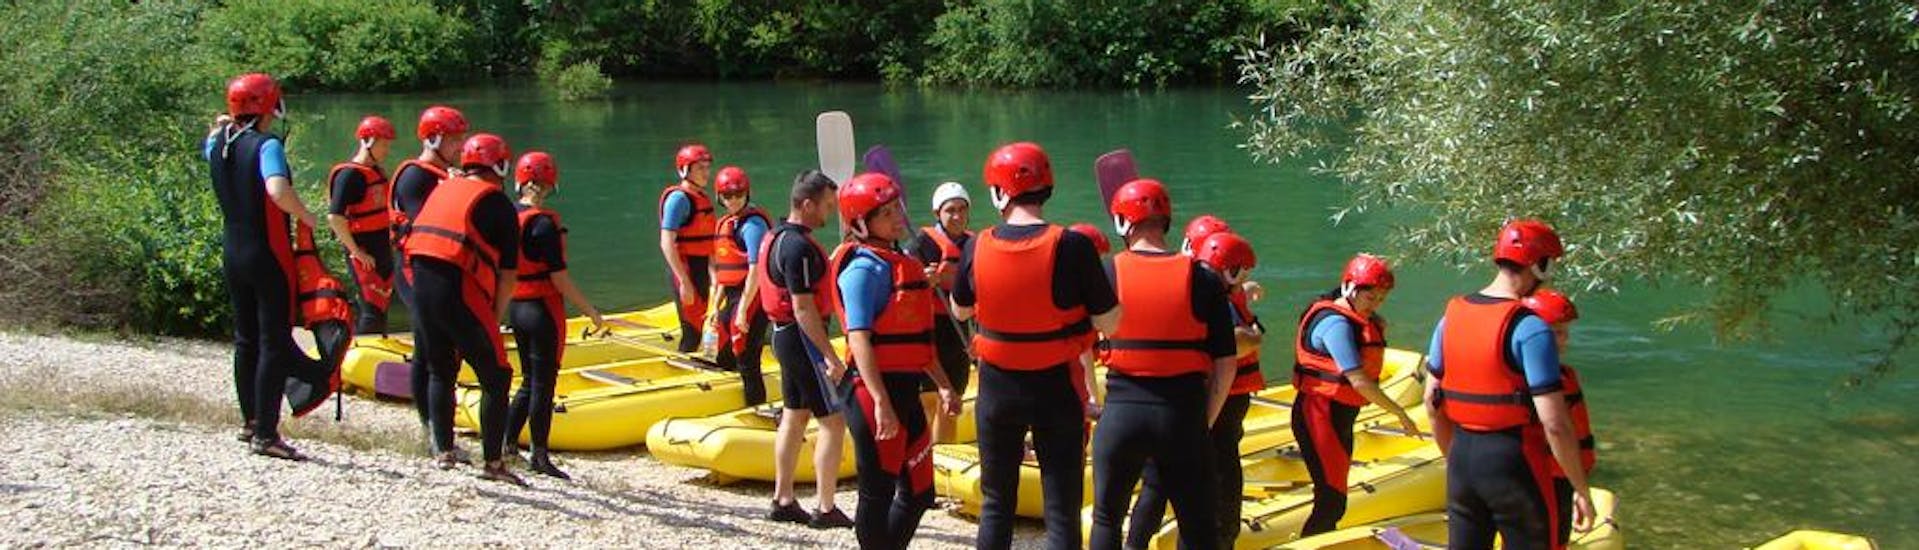 De deelnemers zijn klaar om te beginnen met Raften op de Cetina rivier met Adventure Dalmatia.